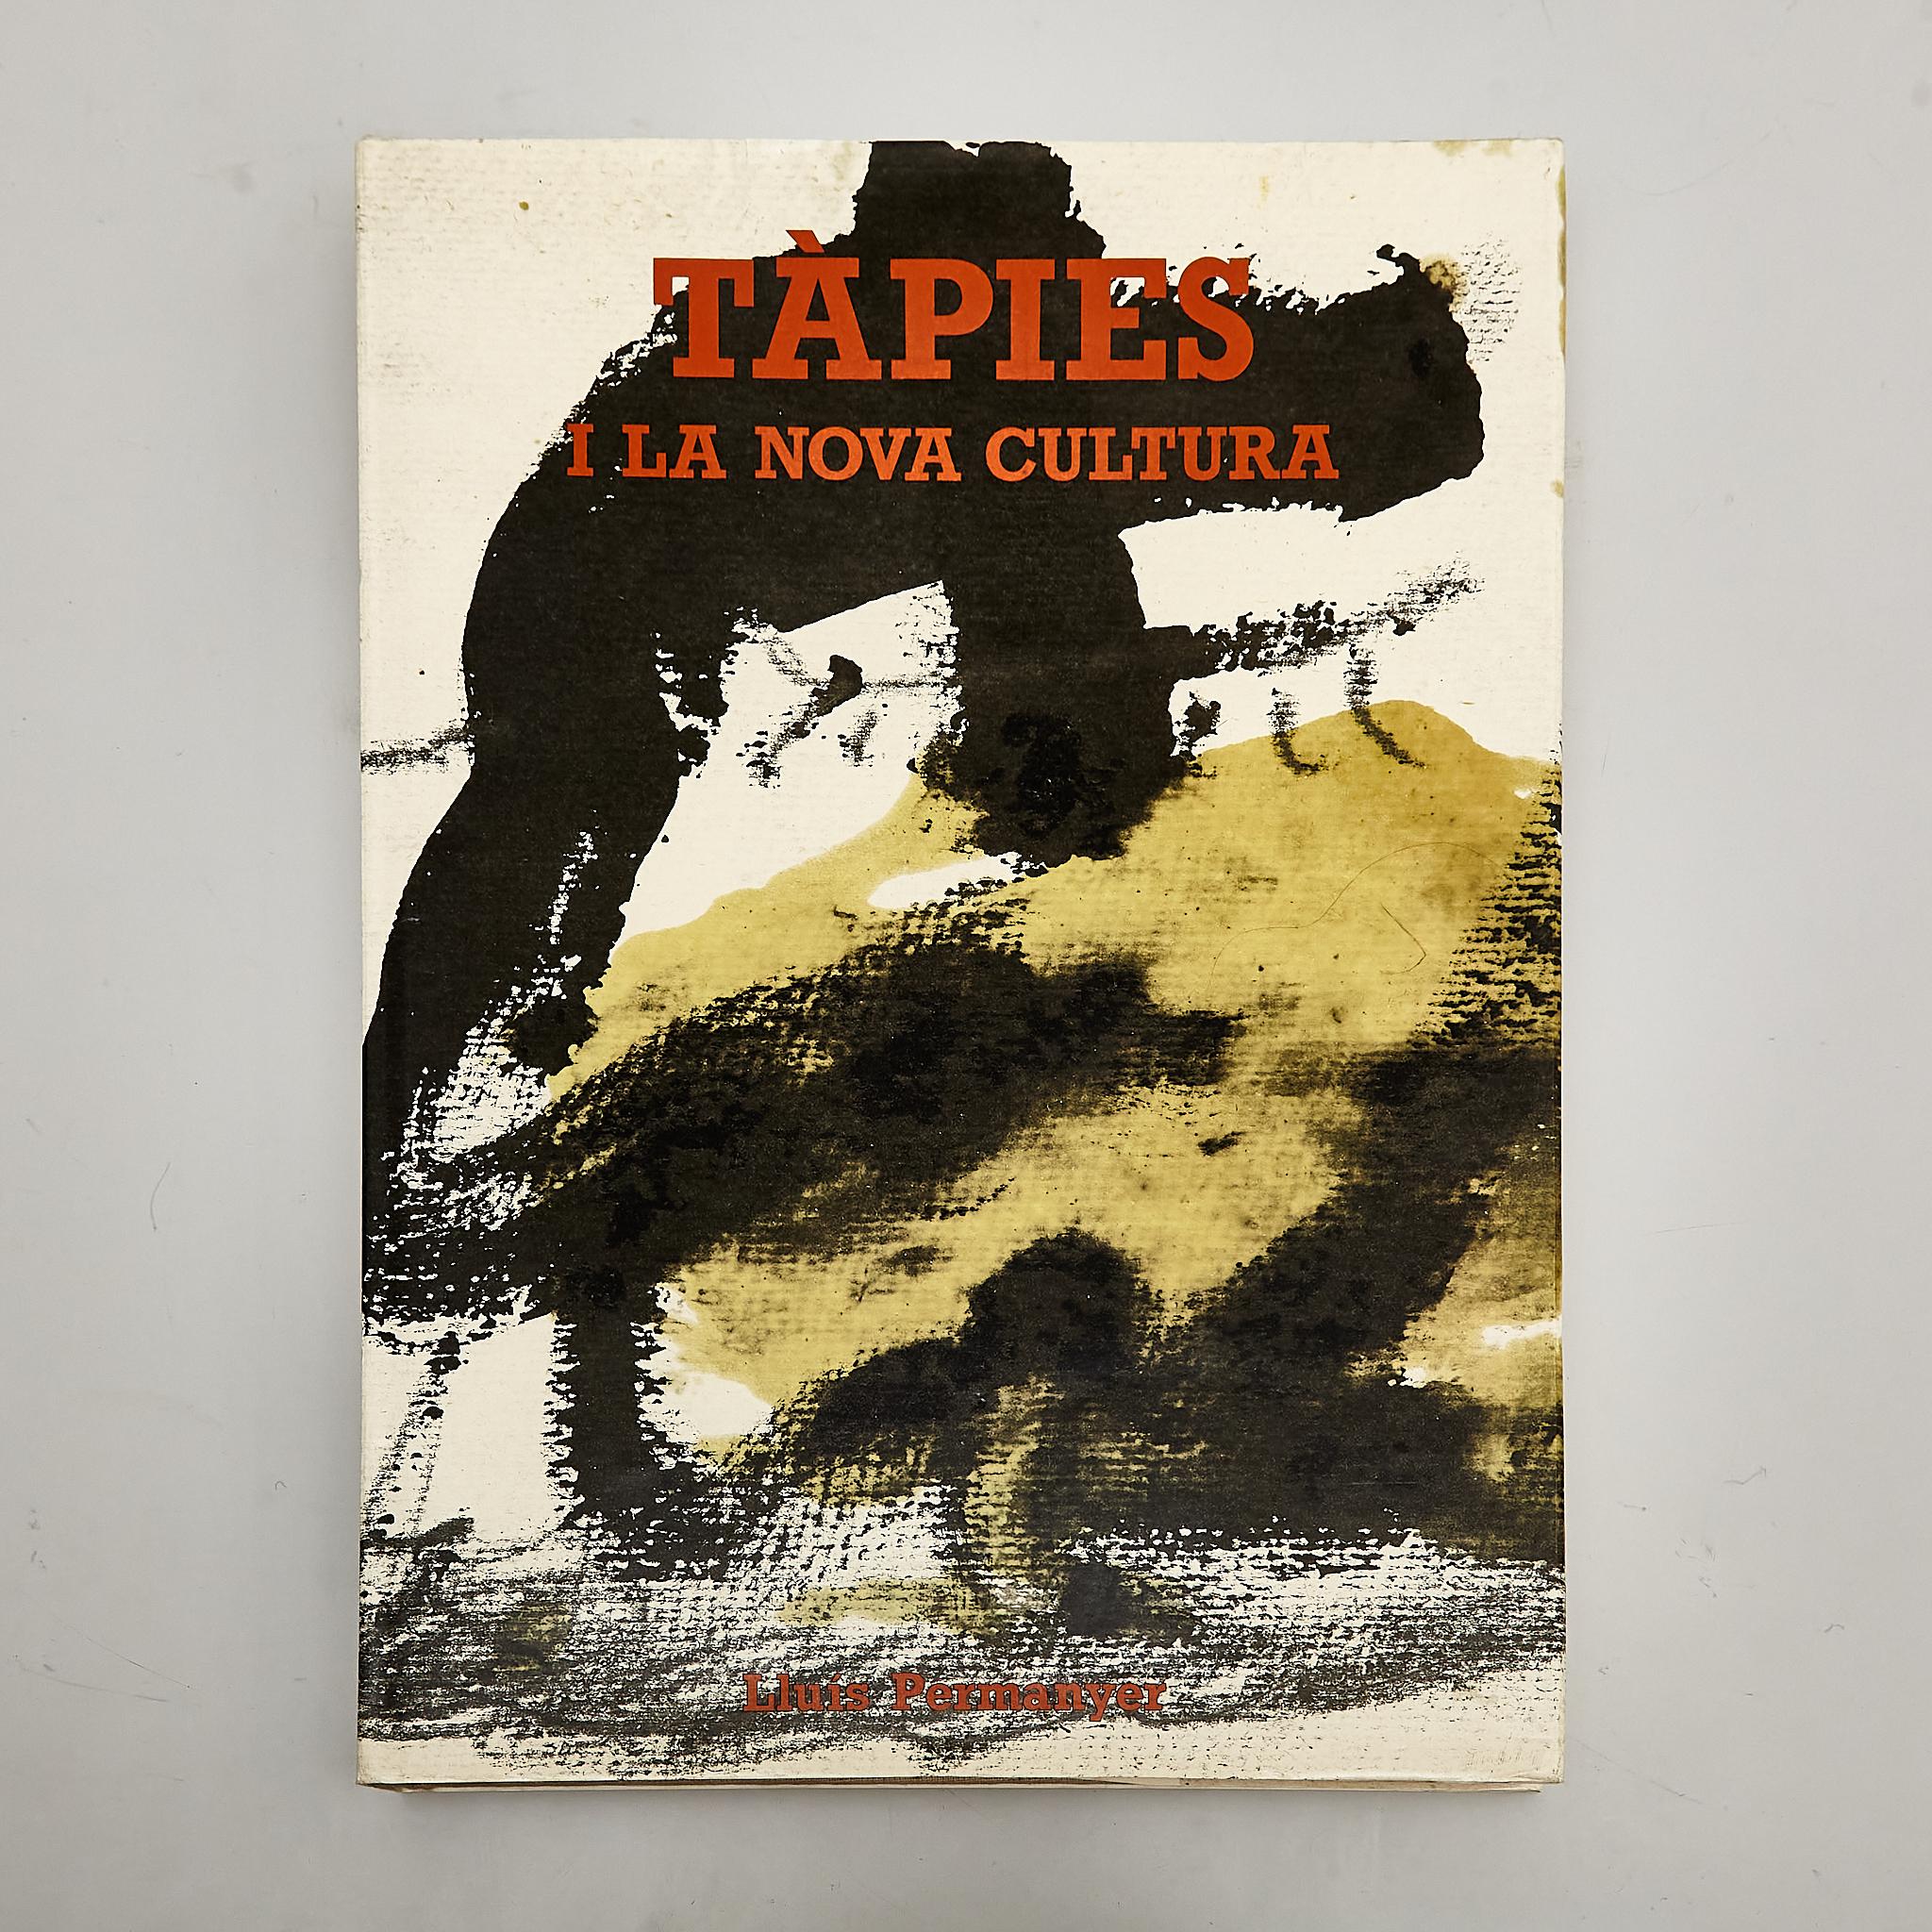 Découvrez le génie artistique d'Antoni Tàpies grâce à ce remarquable ouvrage de 1986 intitulé 